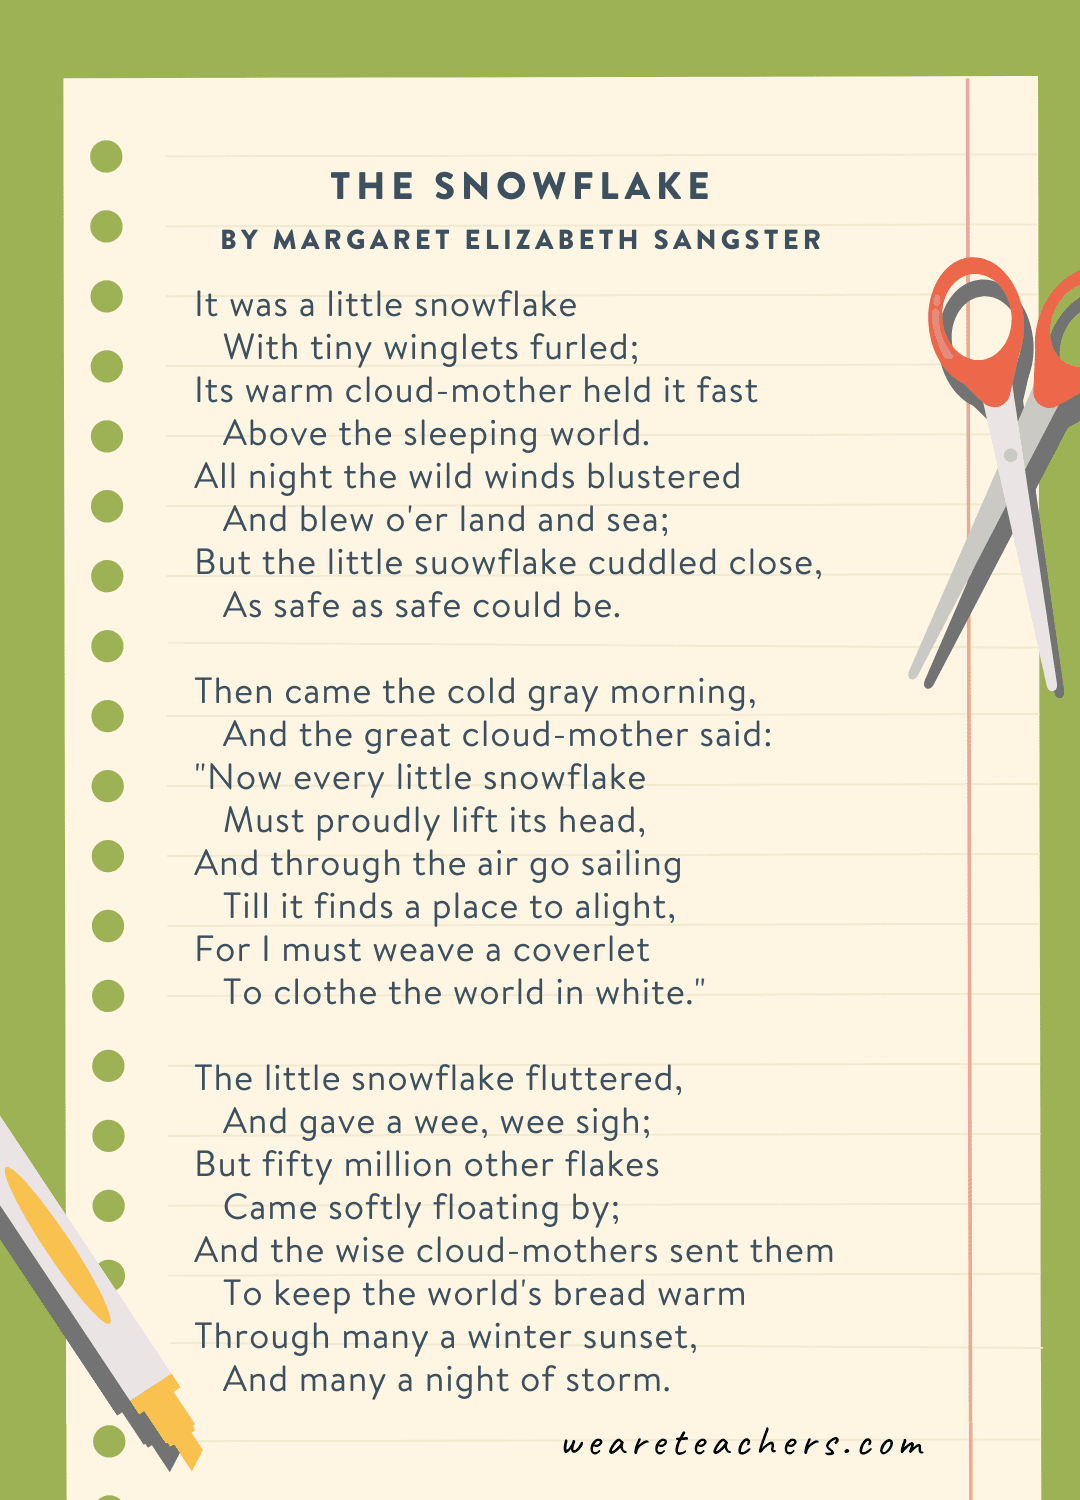 तीसरी कक्षा की कविताओं का उदाहरण: मार्गरेट एलिज़ाबेथ सैंगस्टर द्वारा लिखित द स्नोफ्लेक